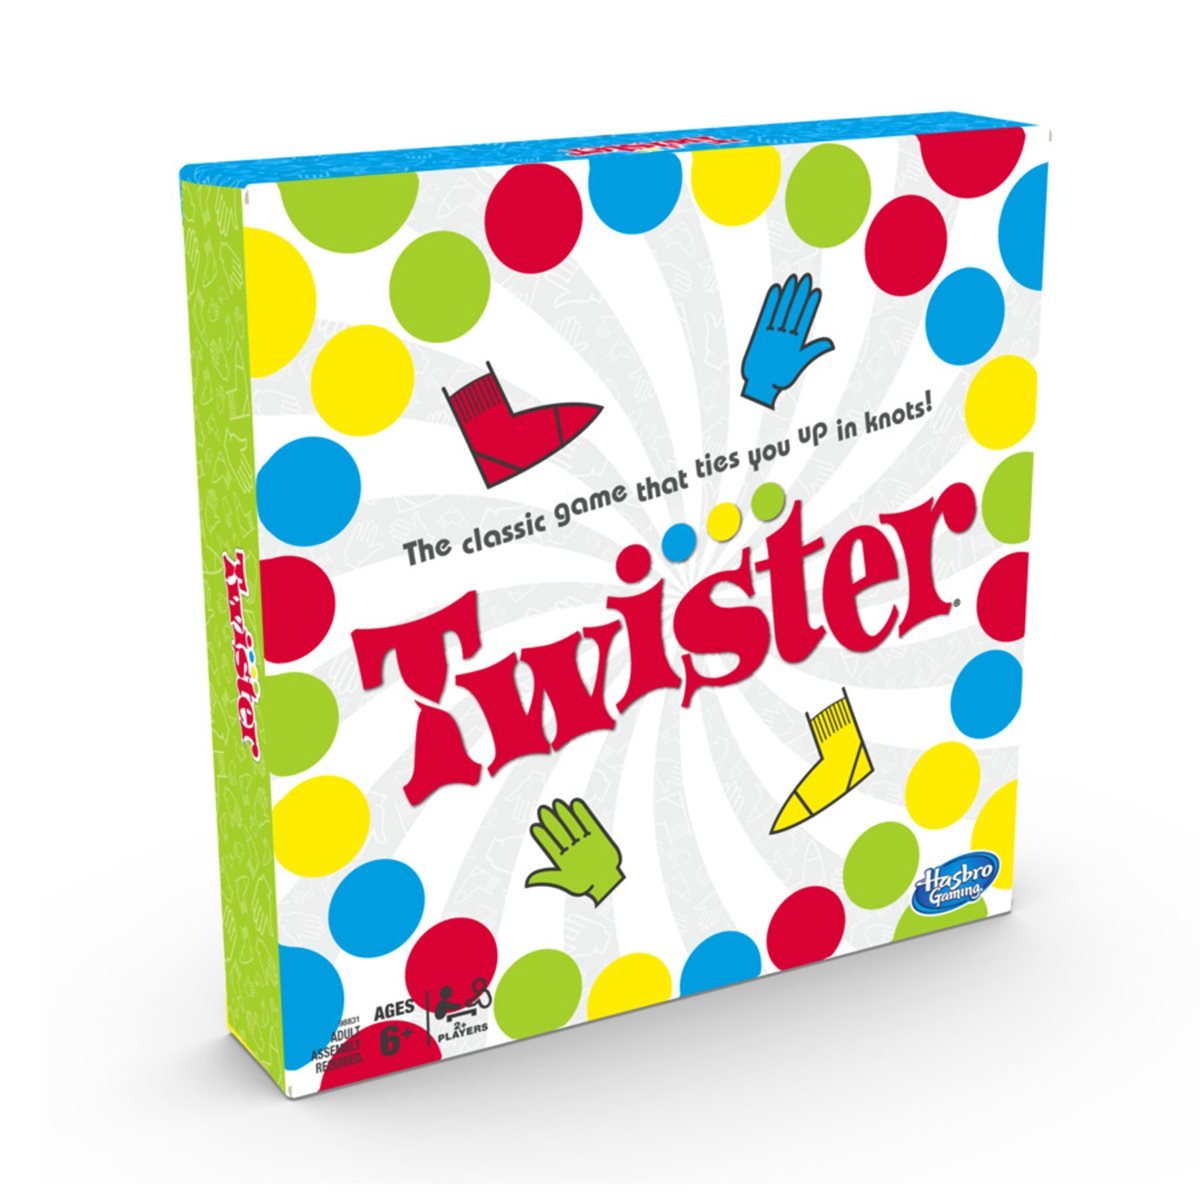 Hasbro Twister Game, 1 ct - Harris Teeter